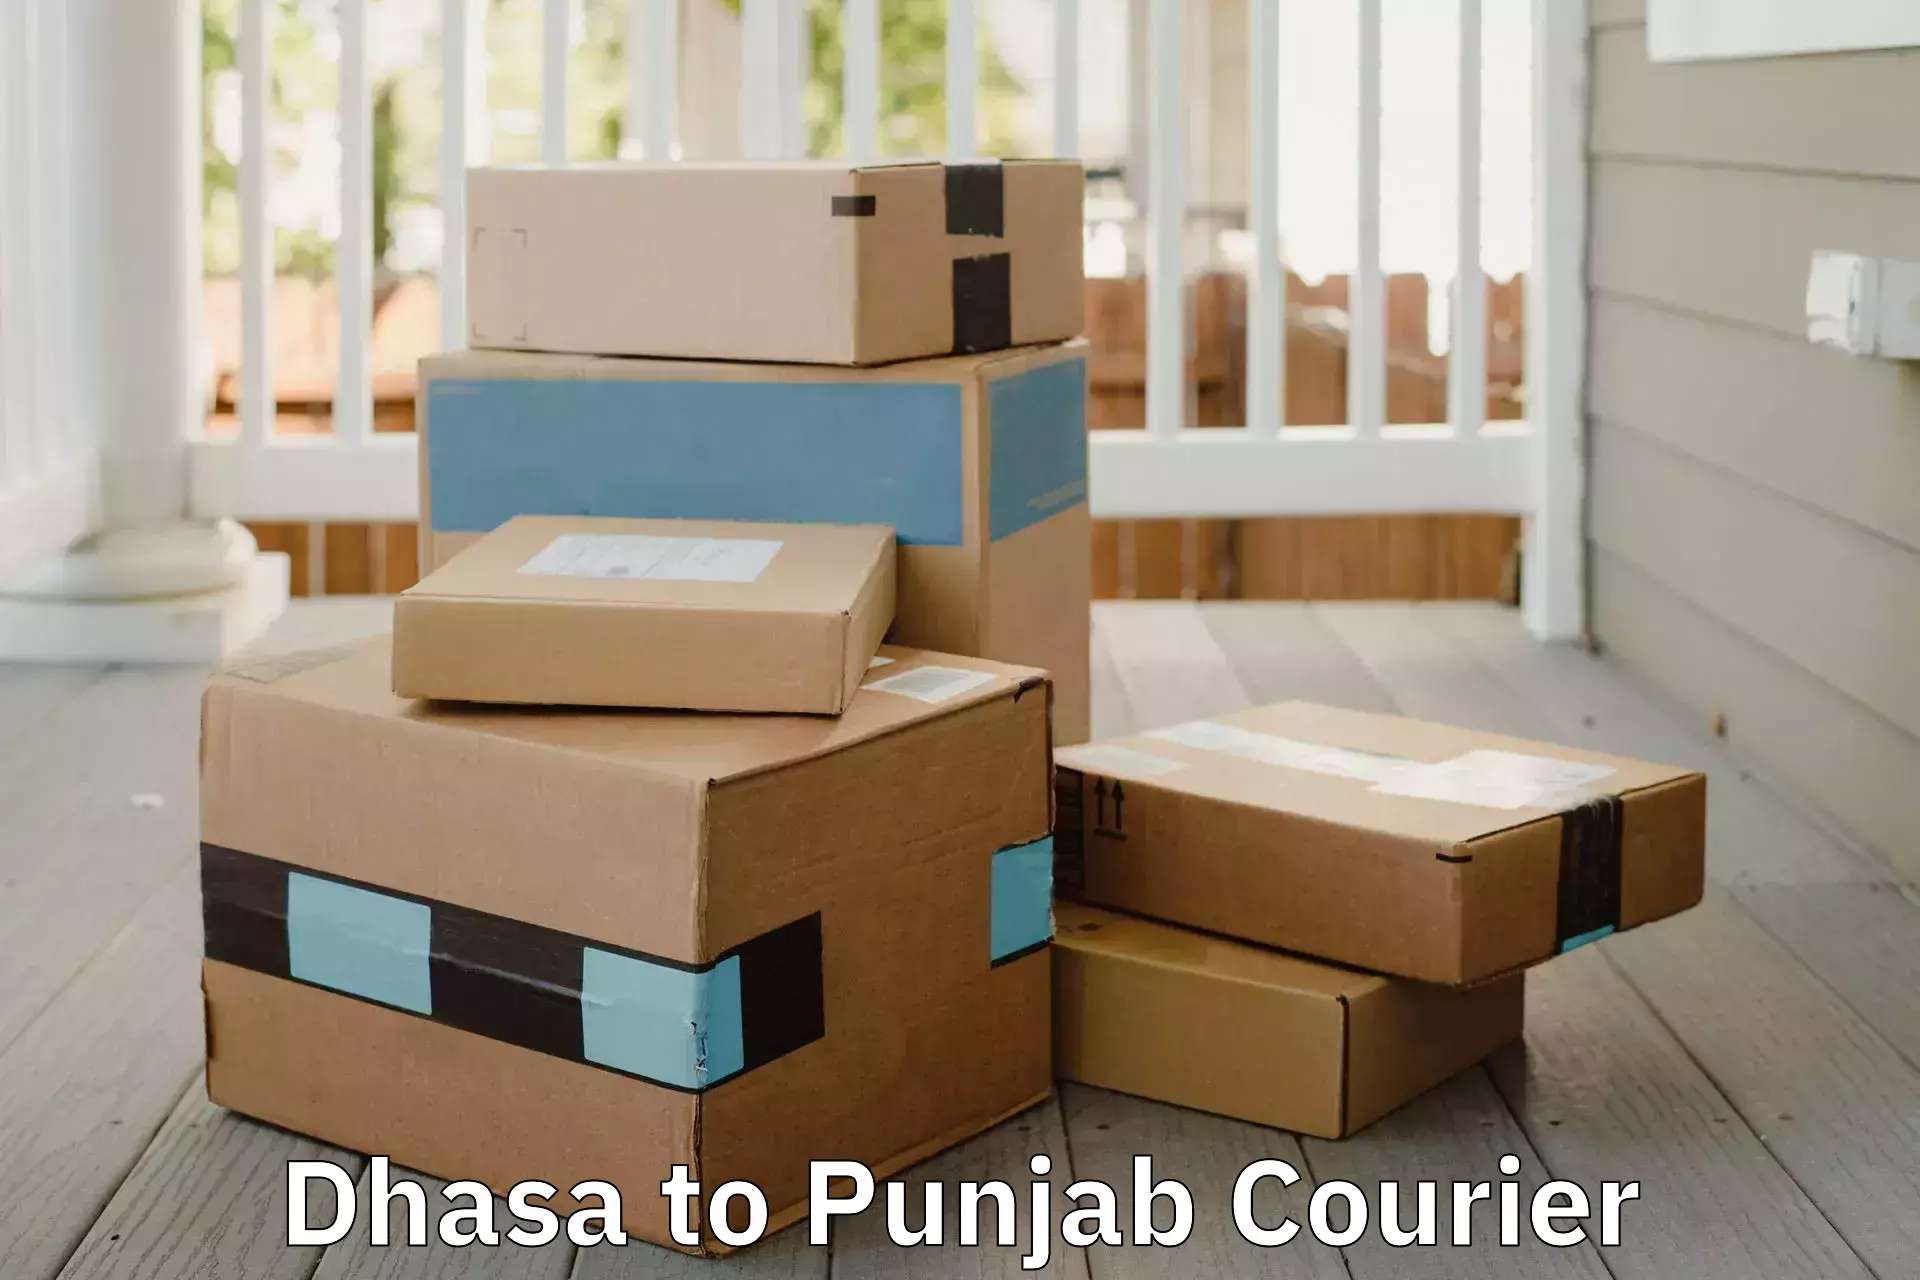 Furniture logistics Dhasa to Punjab